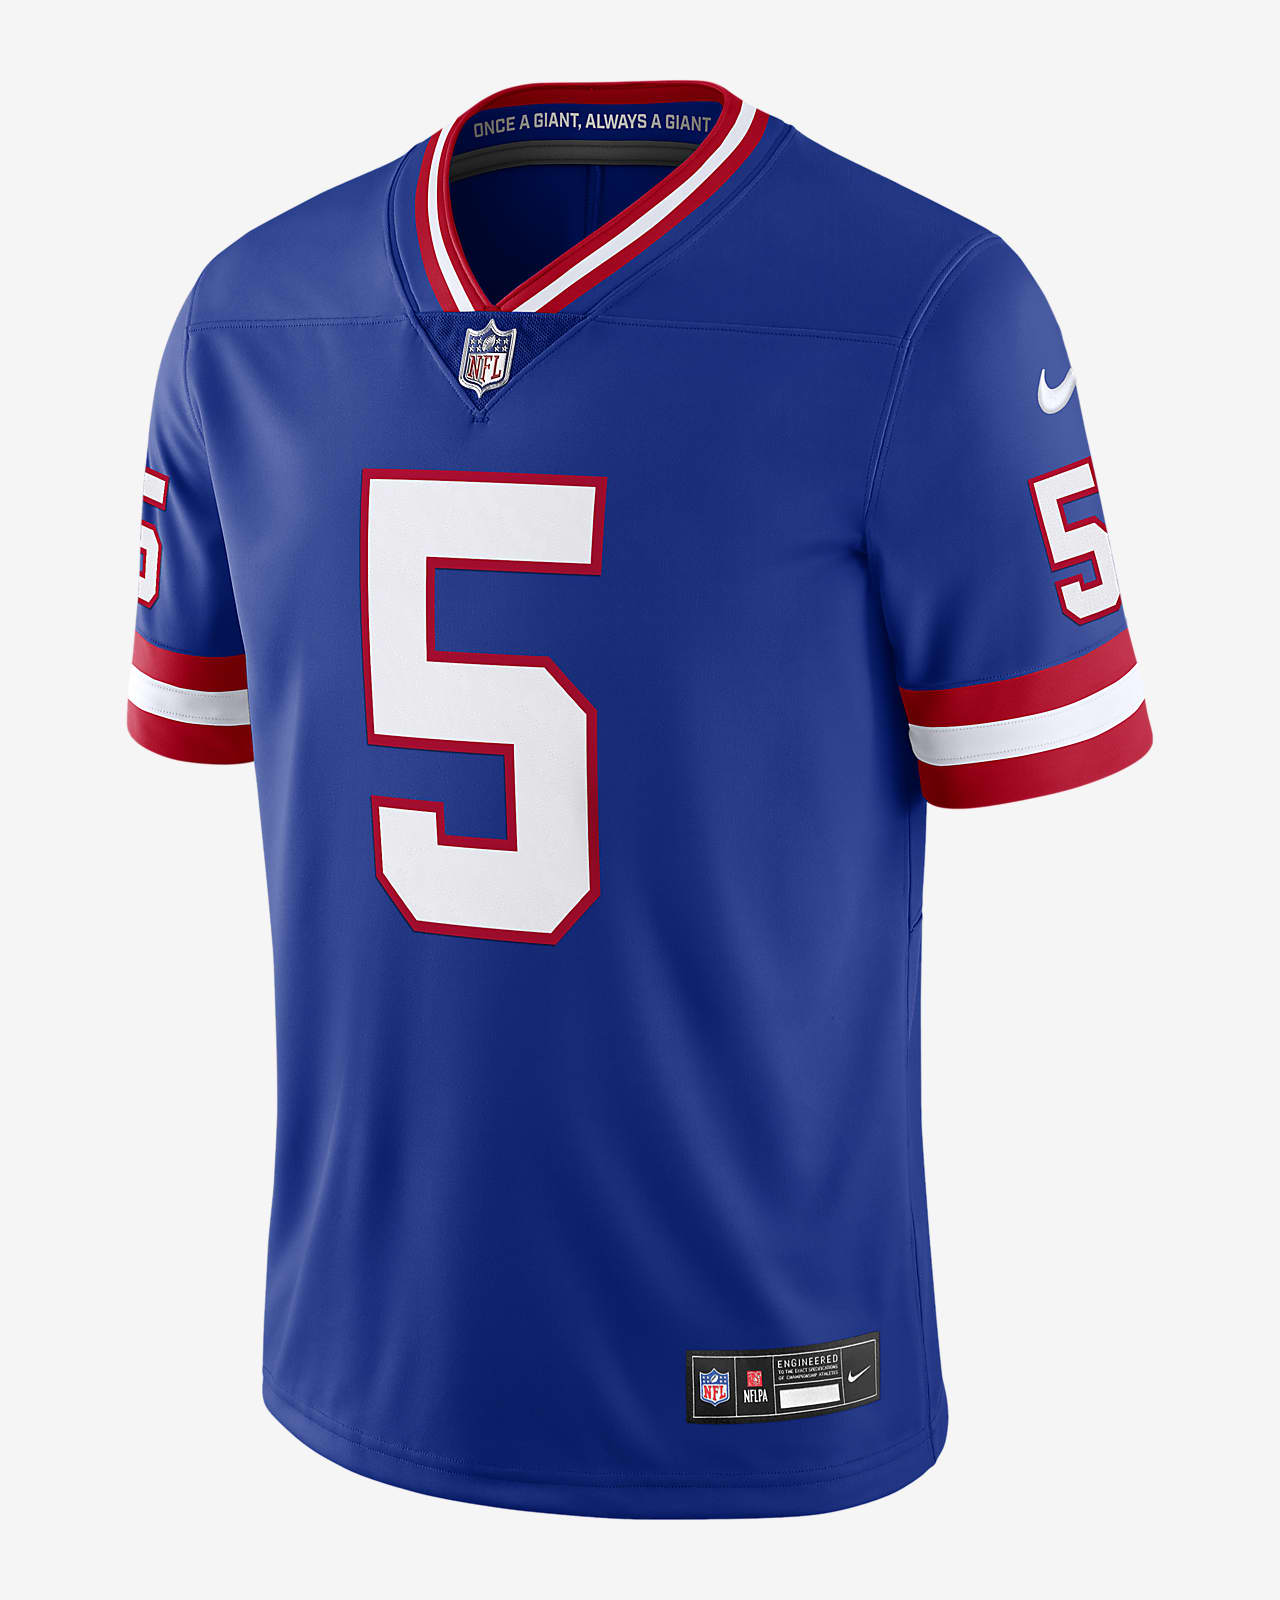 Jersey Nike Dri-FIT de la NFL Limited para hombre Kayvon Thibodeaux New York Giants